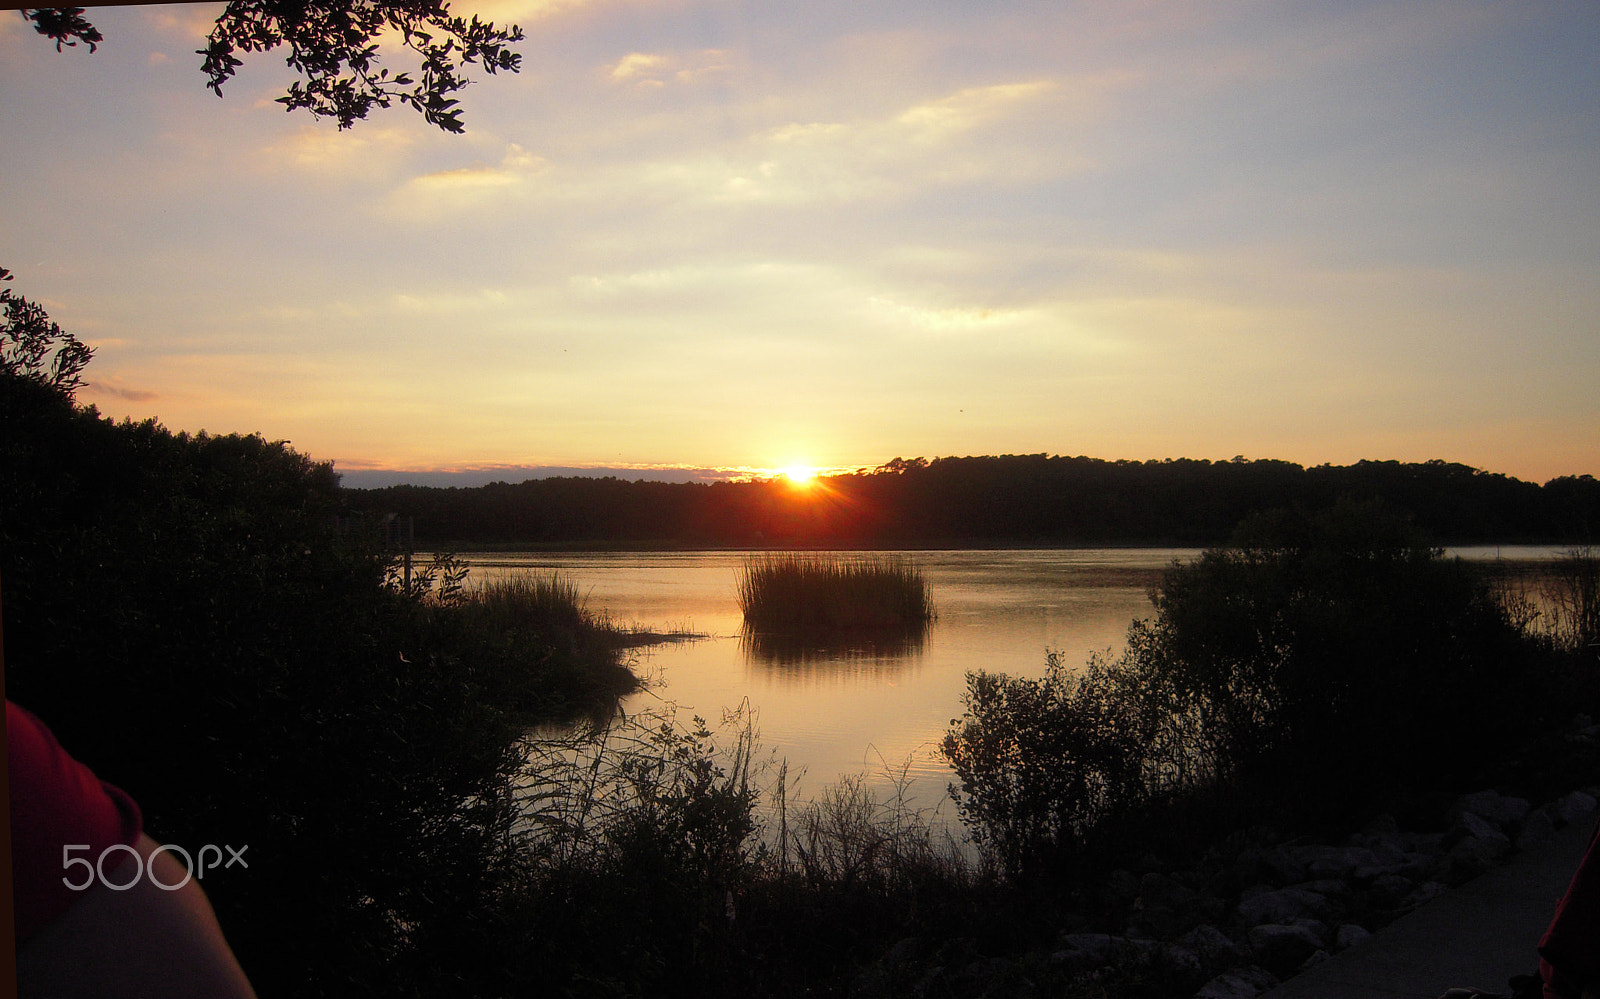 Nikon Coolpix S610 sample photo. Sunset at murrells inlet photography